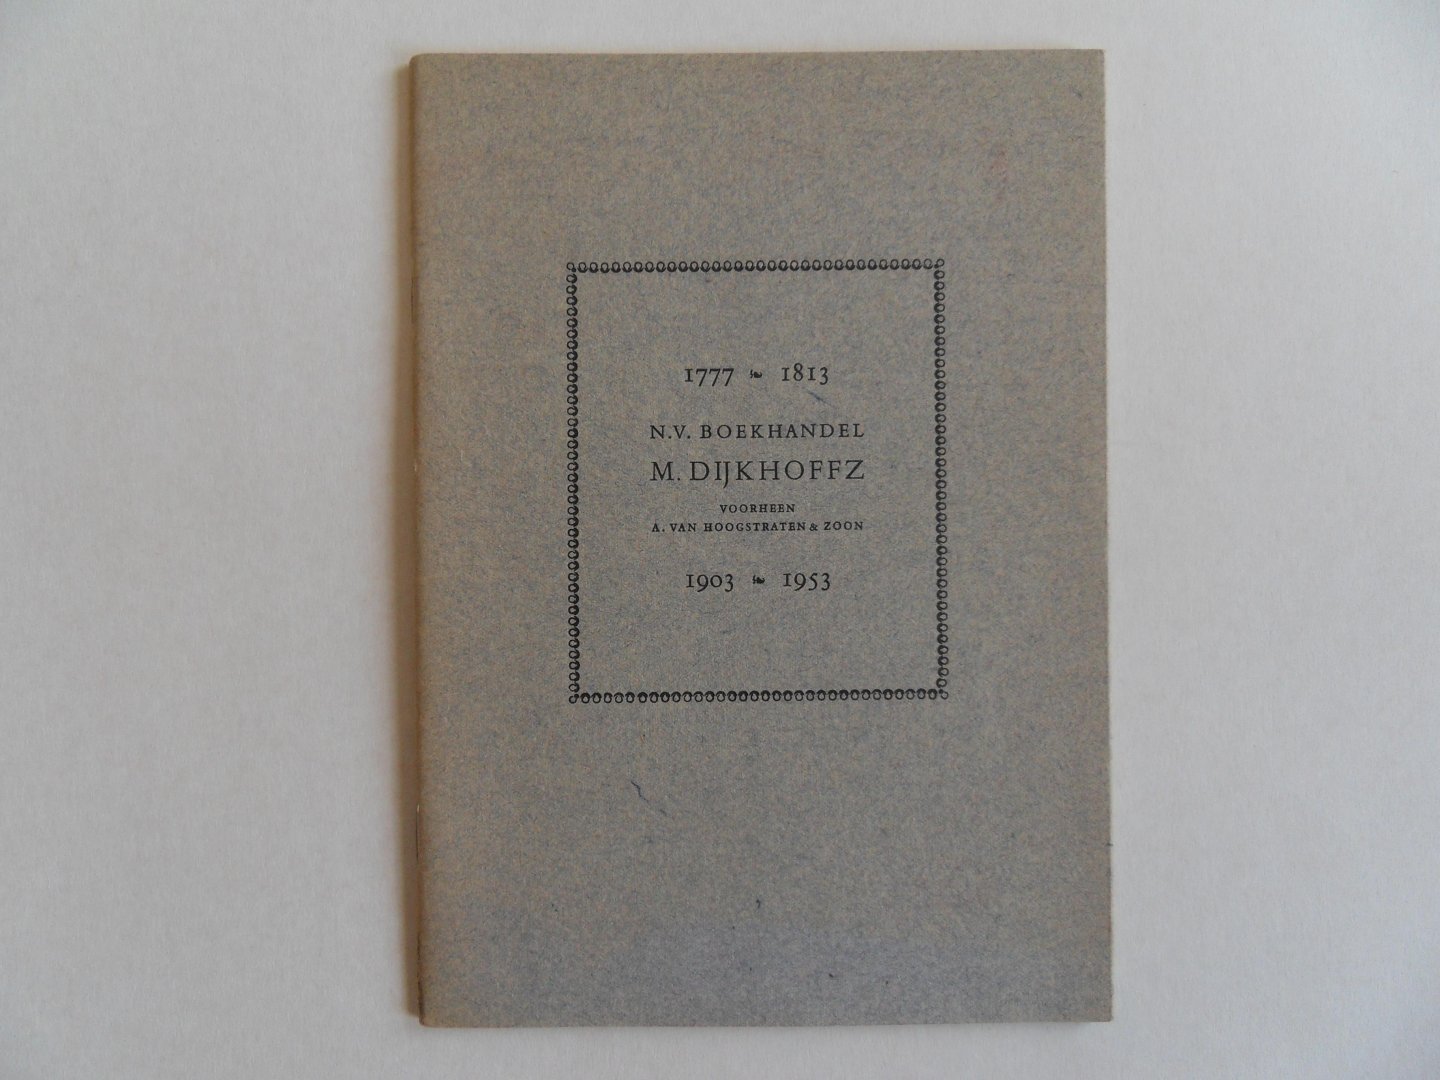 Wink, Th. [ 1897 - 1963 ]. - 1777 - 1813 N.V. Boekhandel M. Dijkhoffz, voorheen A. van Hoogstraten & Zoon 1903 - 1953.